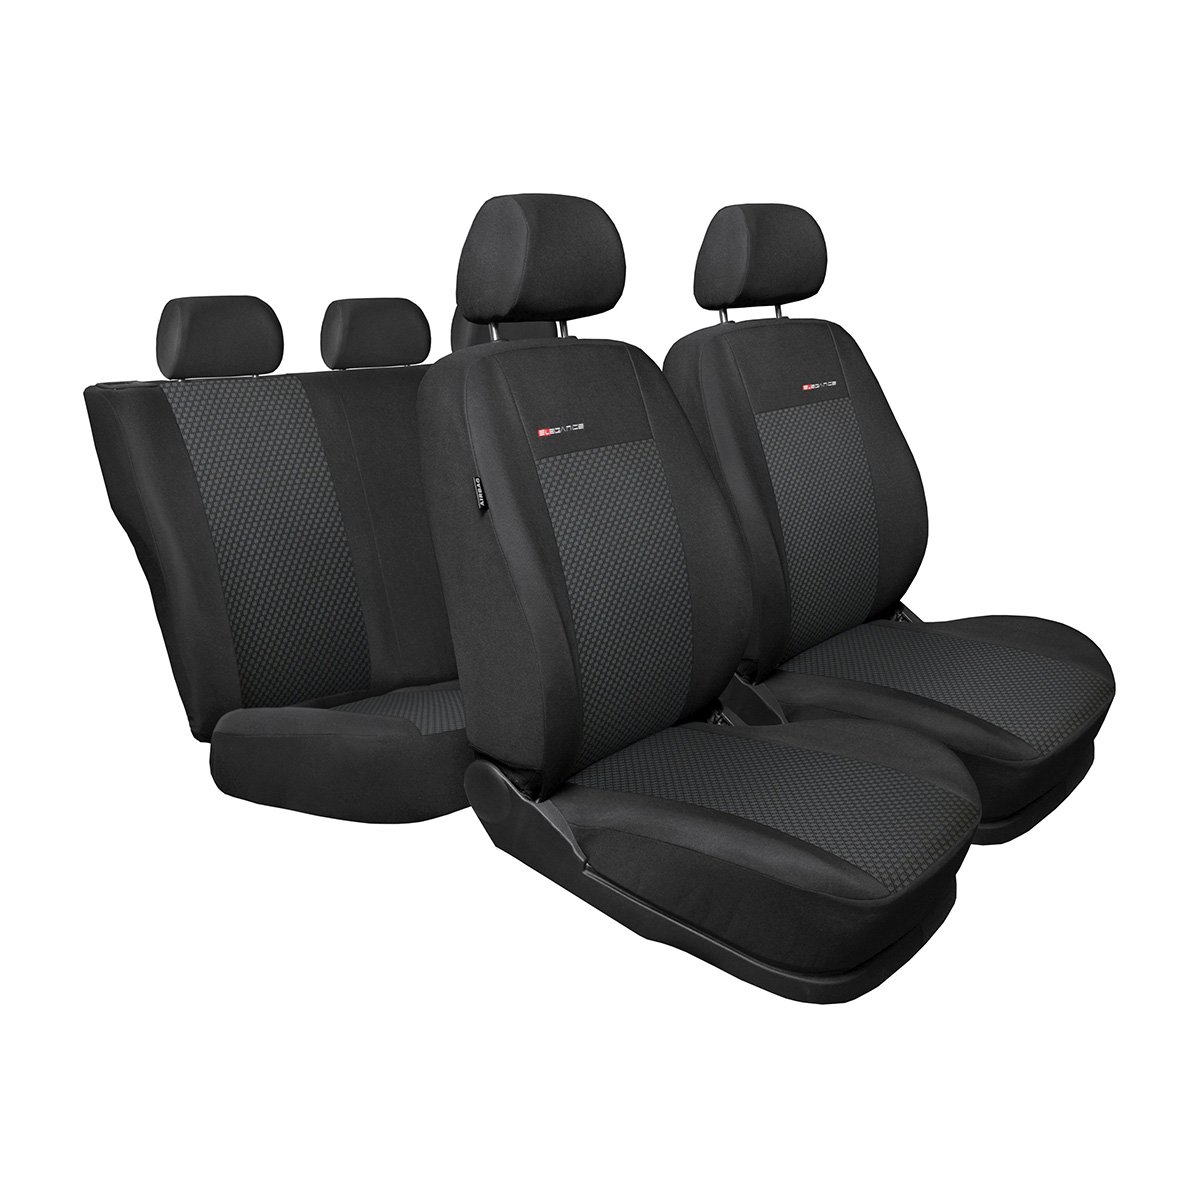 Mossa - Maßgeschneiderte Sitzbezüge Auto kompatibel mit Mitsubishi ASX SUV (2010-2021) - Autositzbezüge Schonbezüge für Autositze - E3 von Mossa